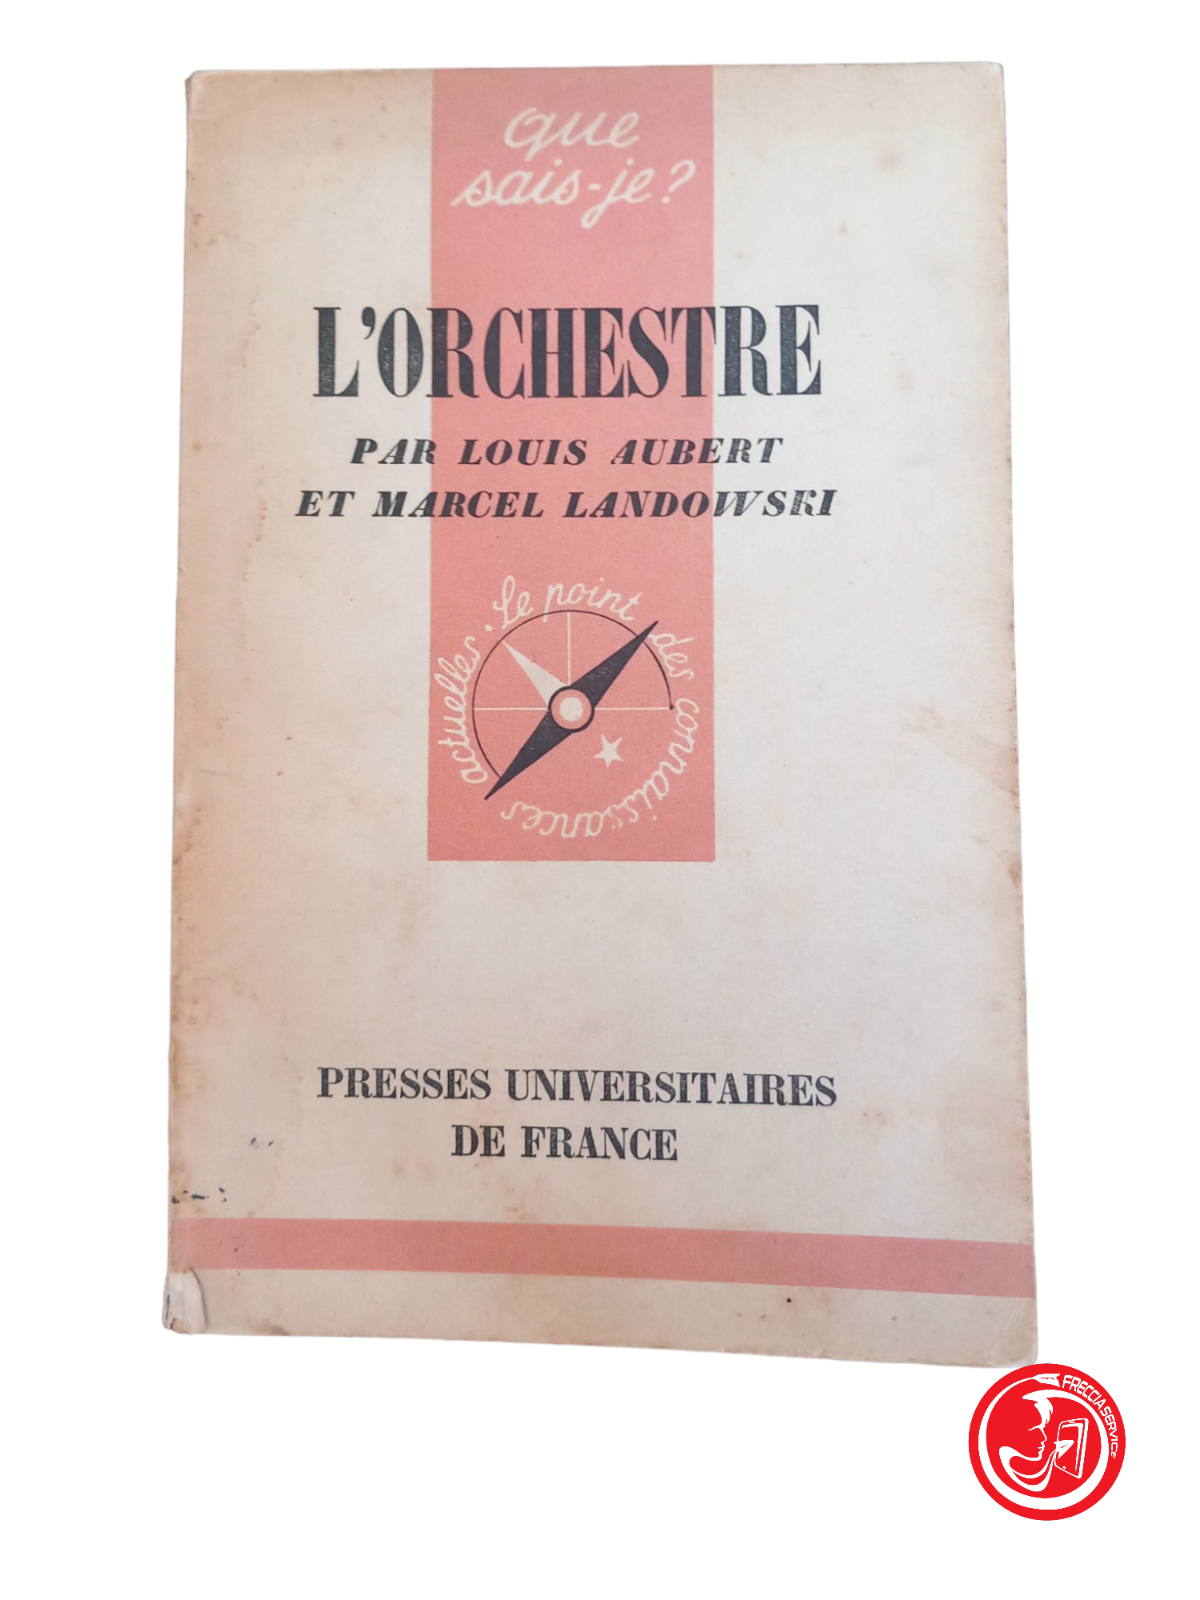 L'ORCHESTRE par Louis Aubert et Marcel Landowski, 1951